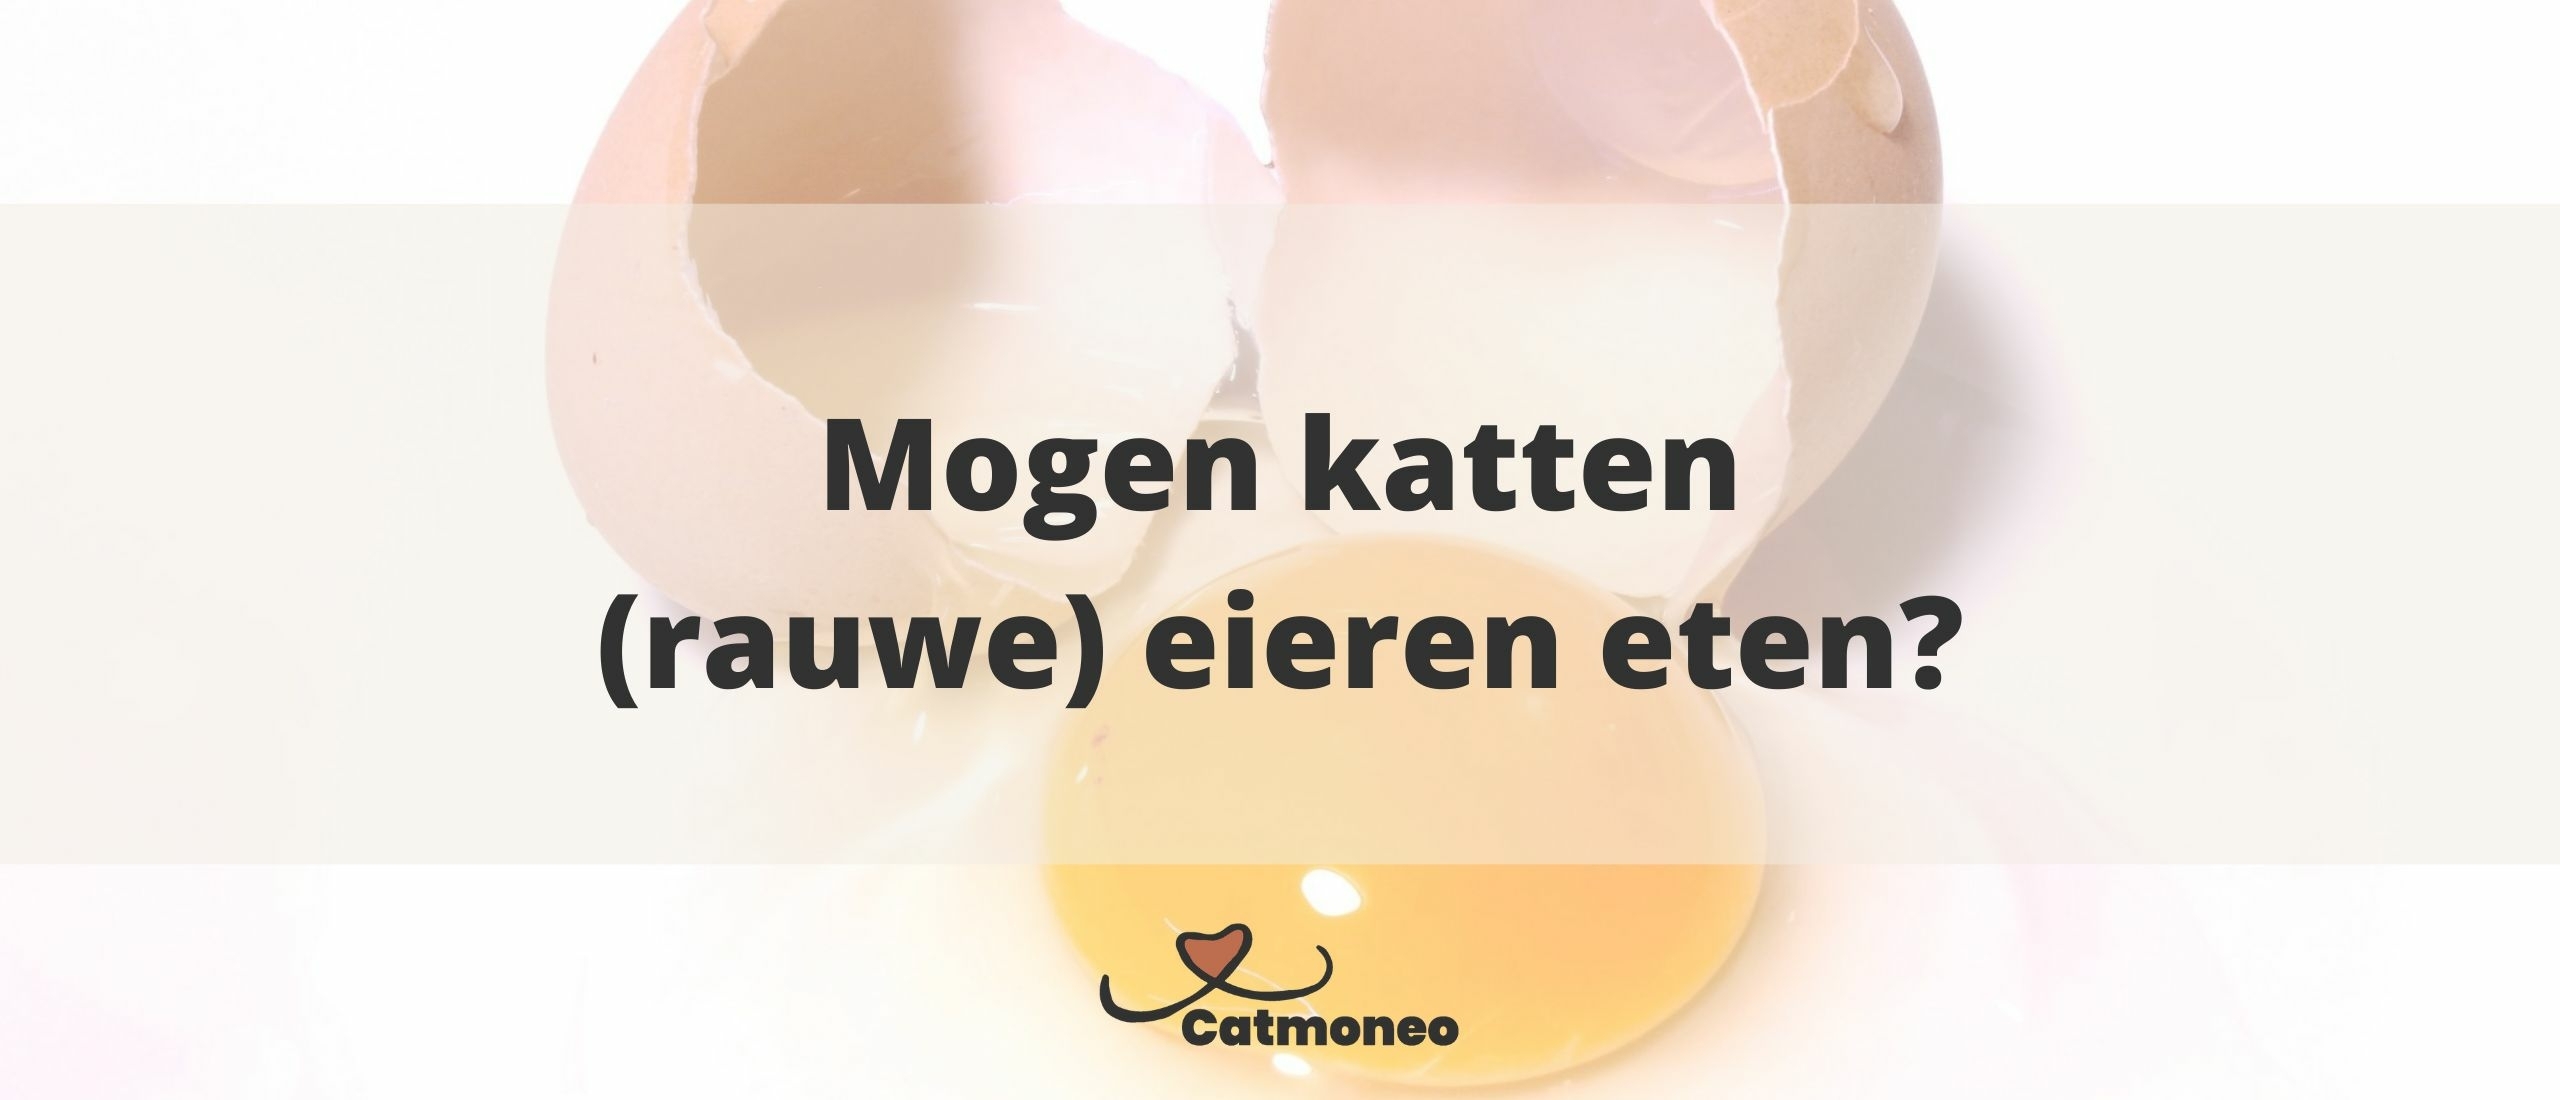 Mogen katten eieren eten?